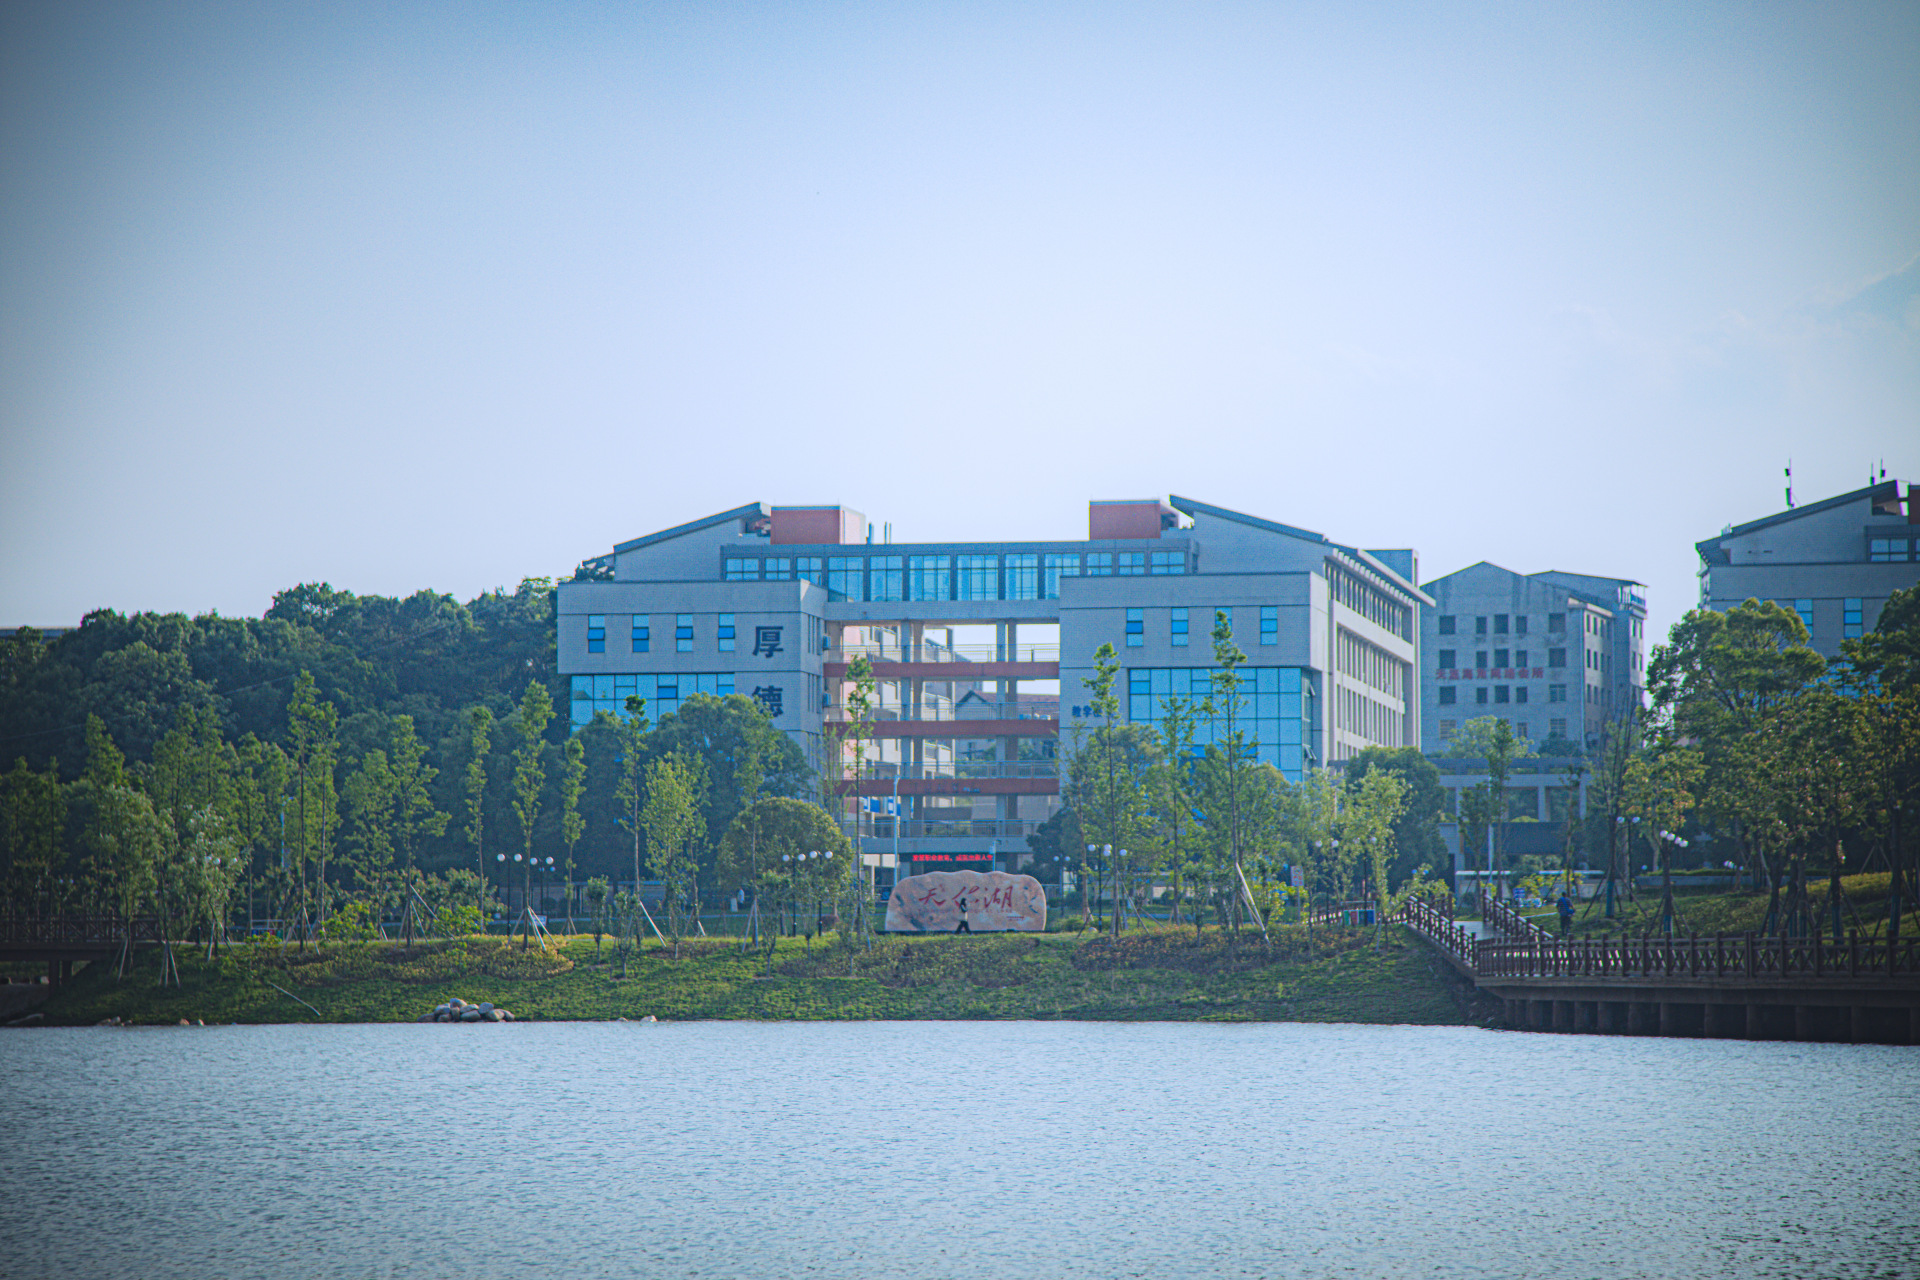 湖南高速铁路职业技术学院,位于湖南省衡阳市,是湖南省内三铁大专